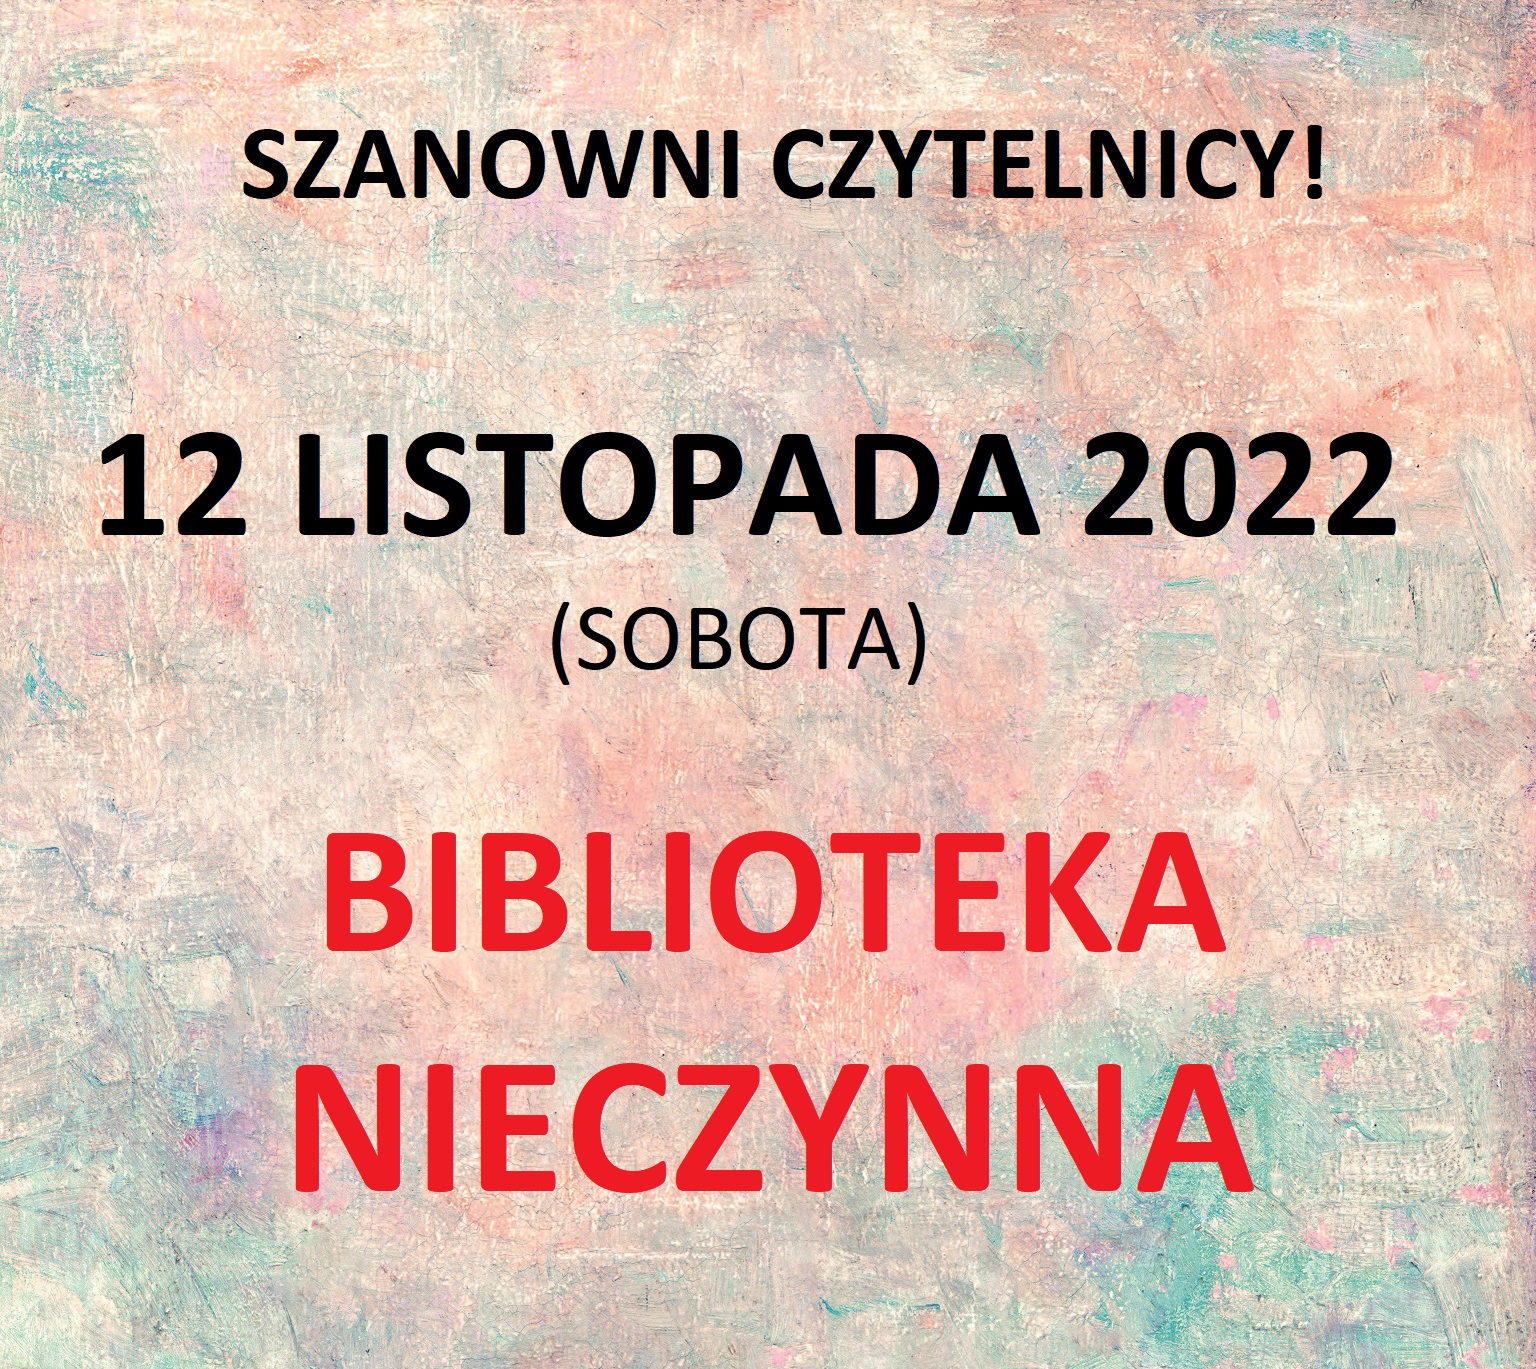 12 Listopada 2022 Biblioteka Nieczynna